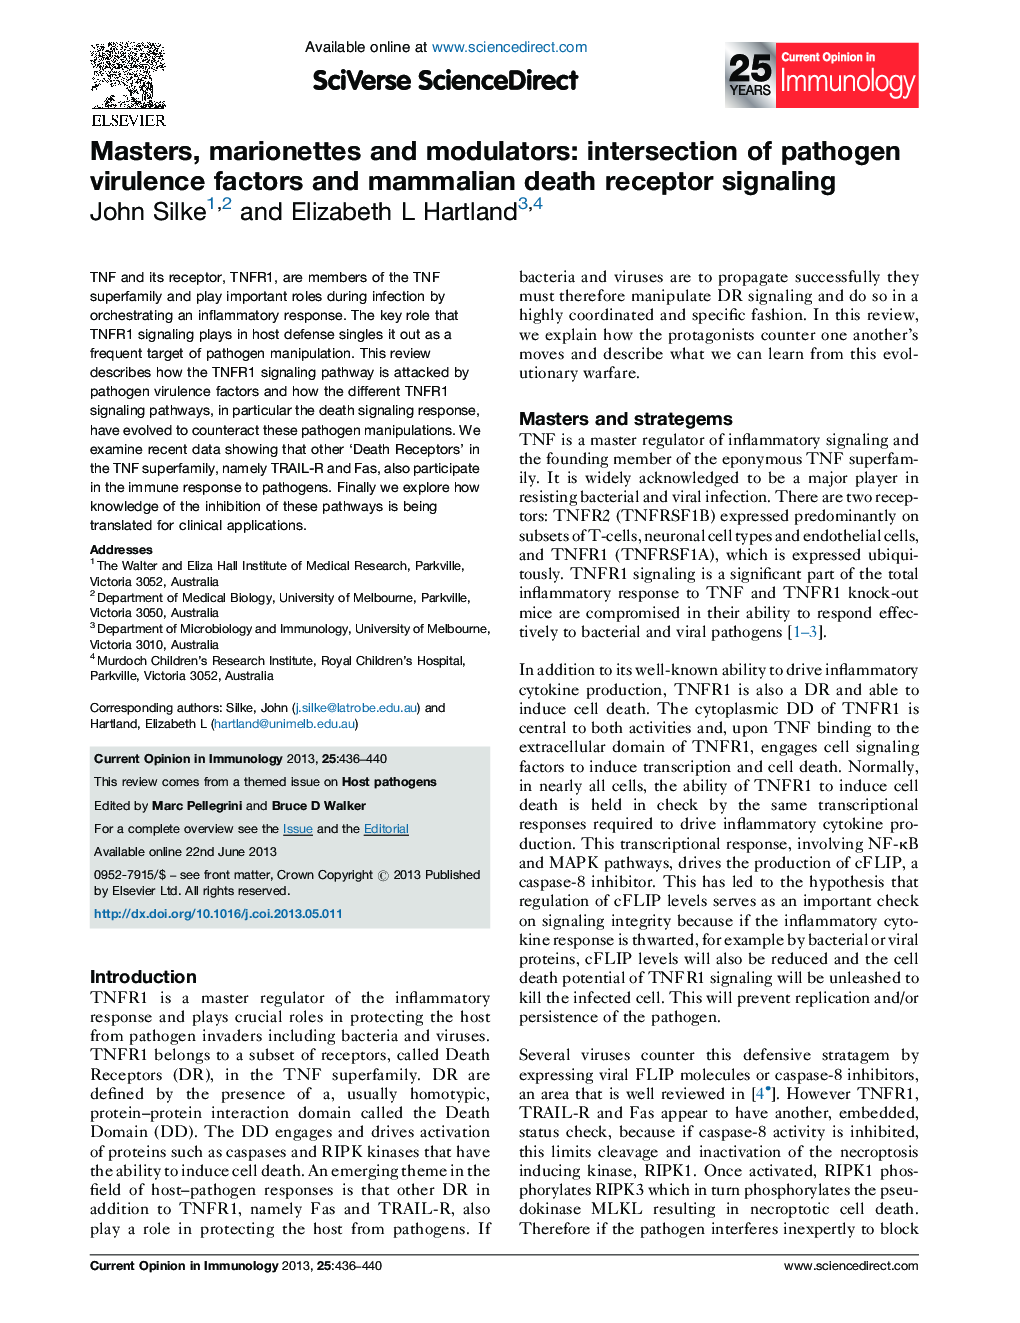 کارشناسی ارشد، ماریوتها و مدولاتورها: تقاطع عوامل بیماریزای پاتوژن و سیگنال گیرنده مرگ پستانداران 